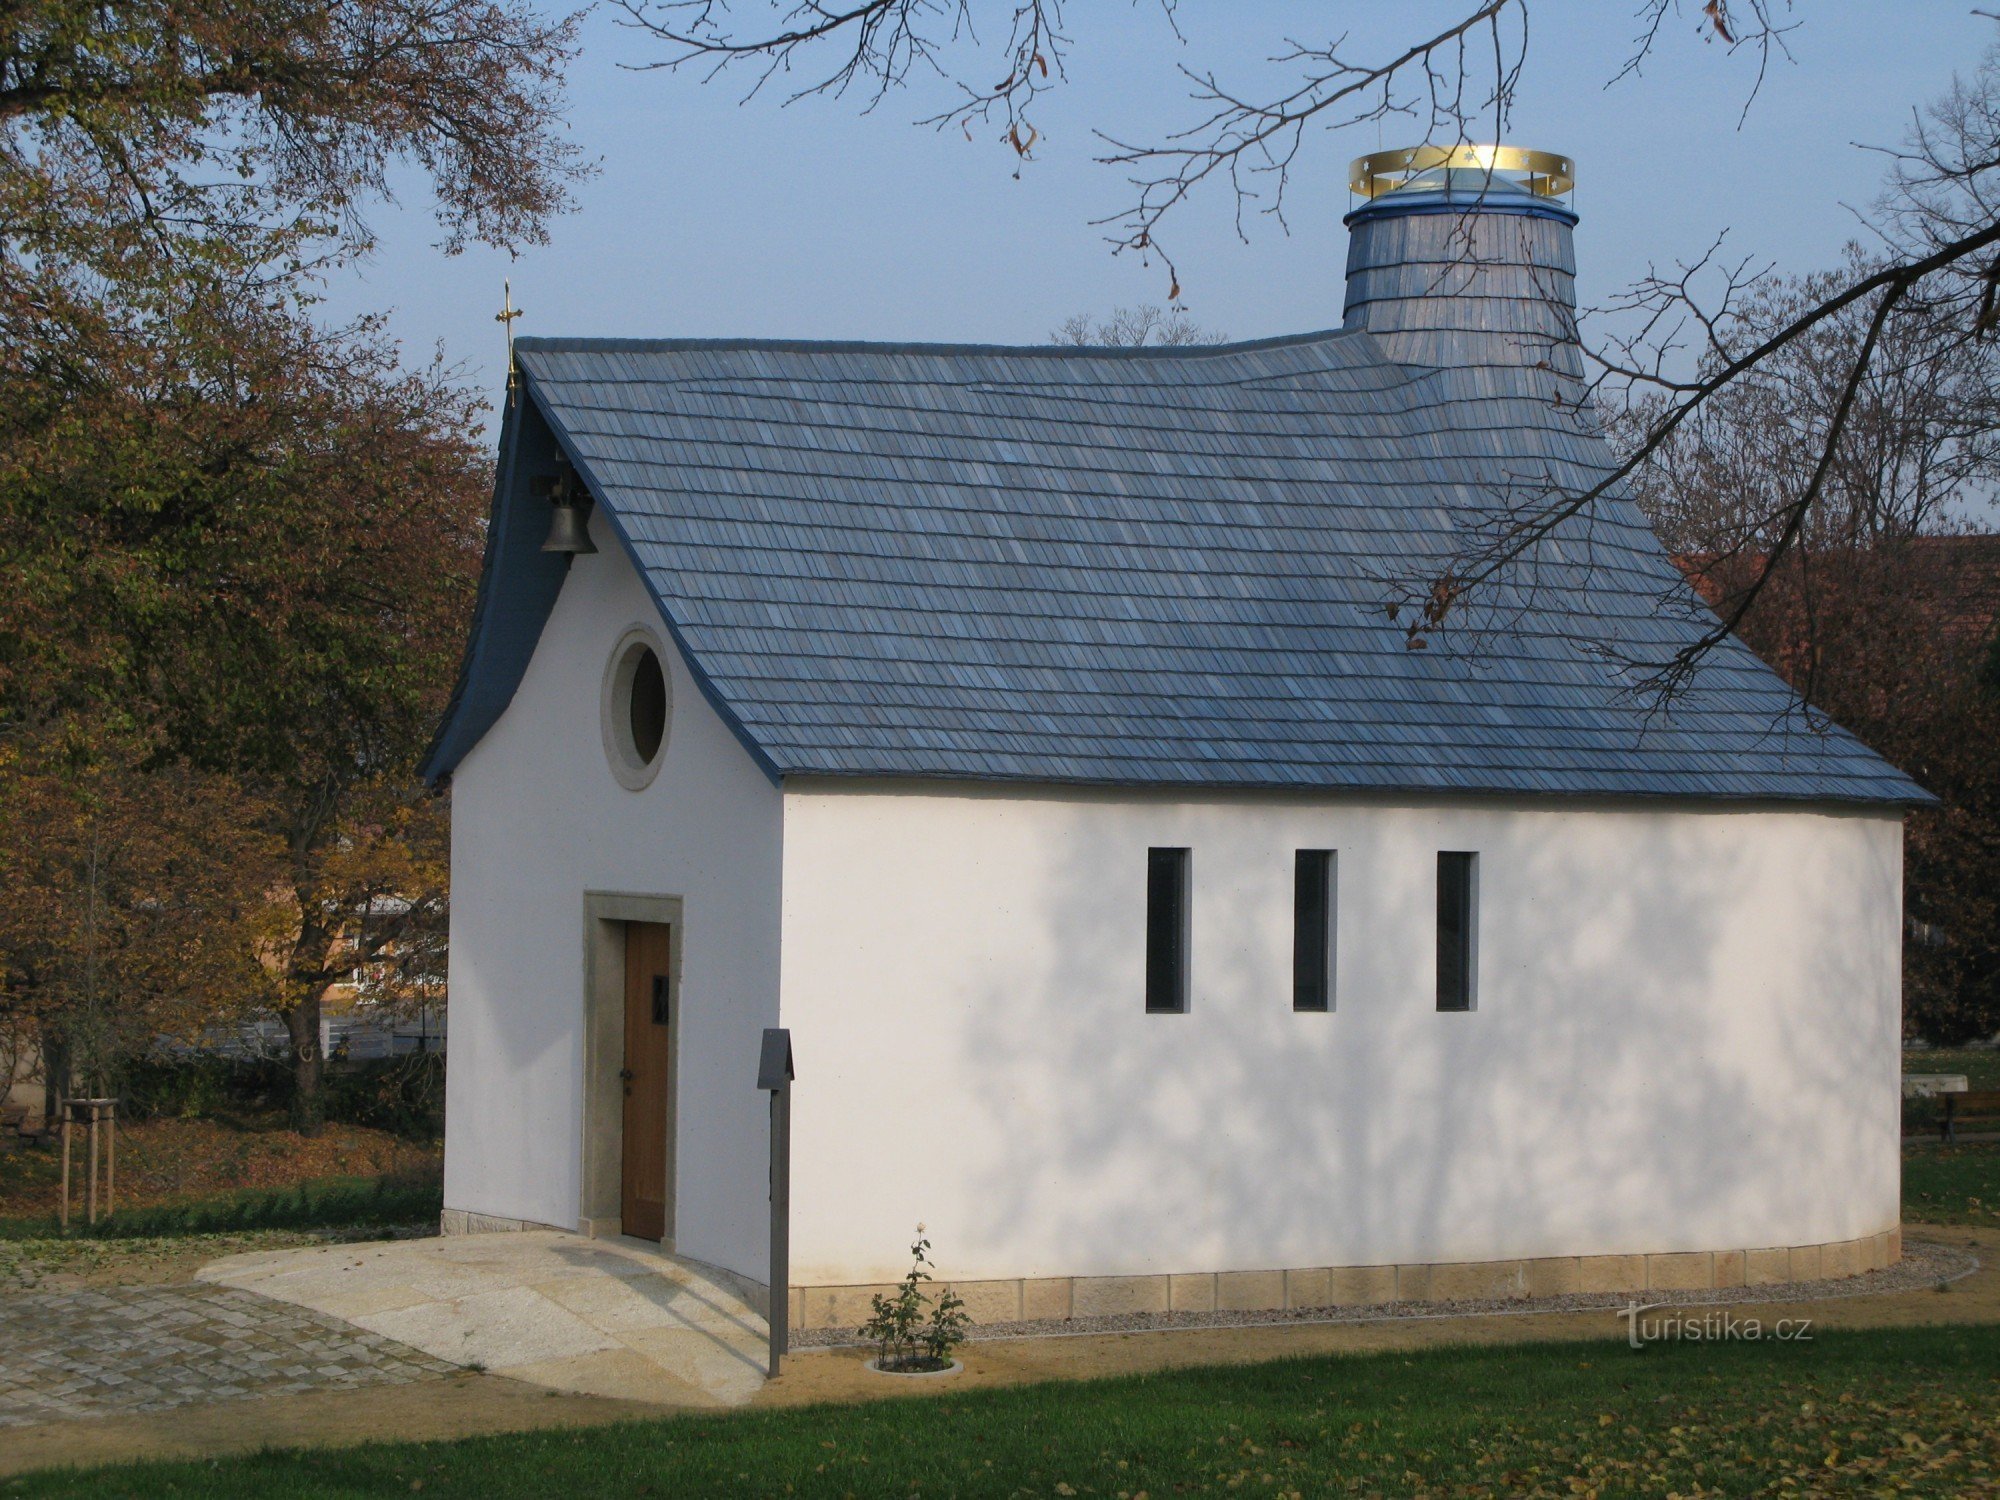 Kamenné Žehrovice, kapell